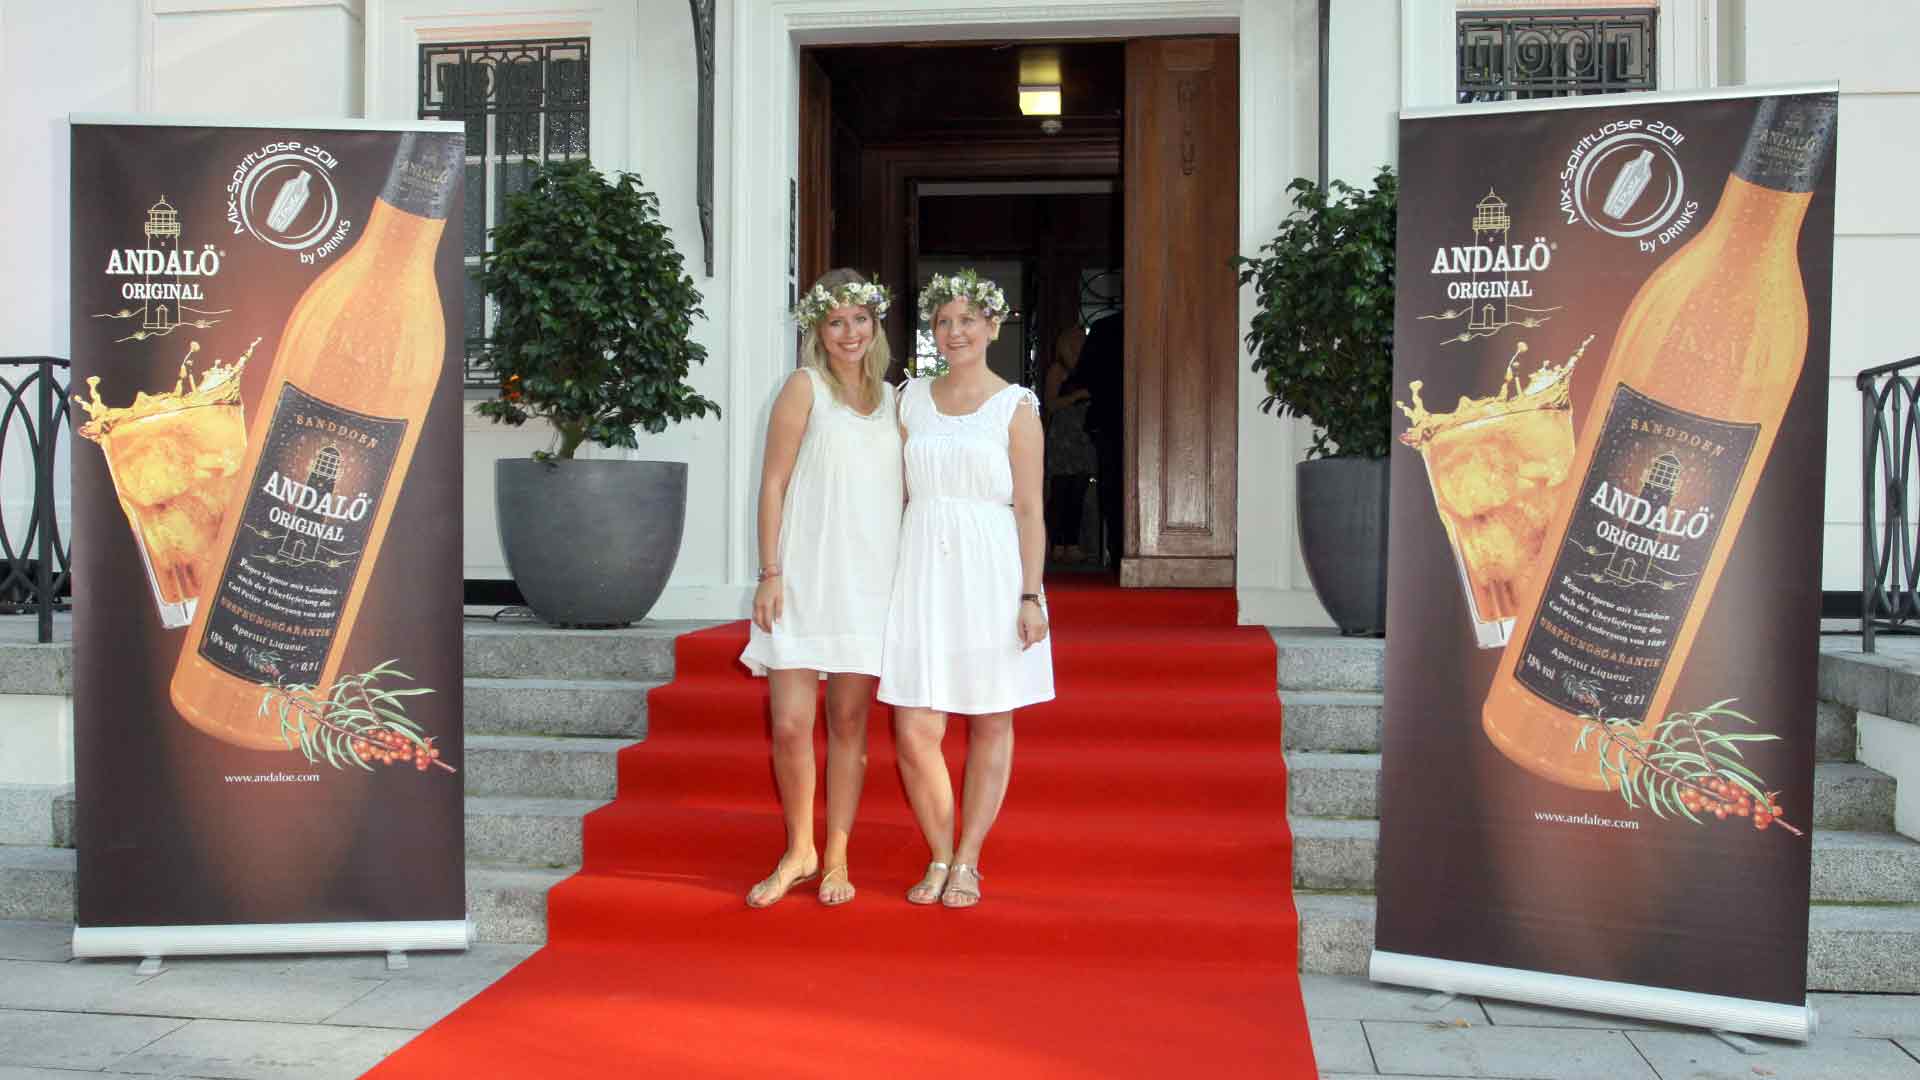 Andalö Midsummer Party in Hamburg mit Pamela Anderson und vielen deutschen VIP Gästen